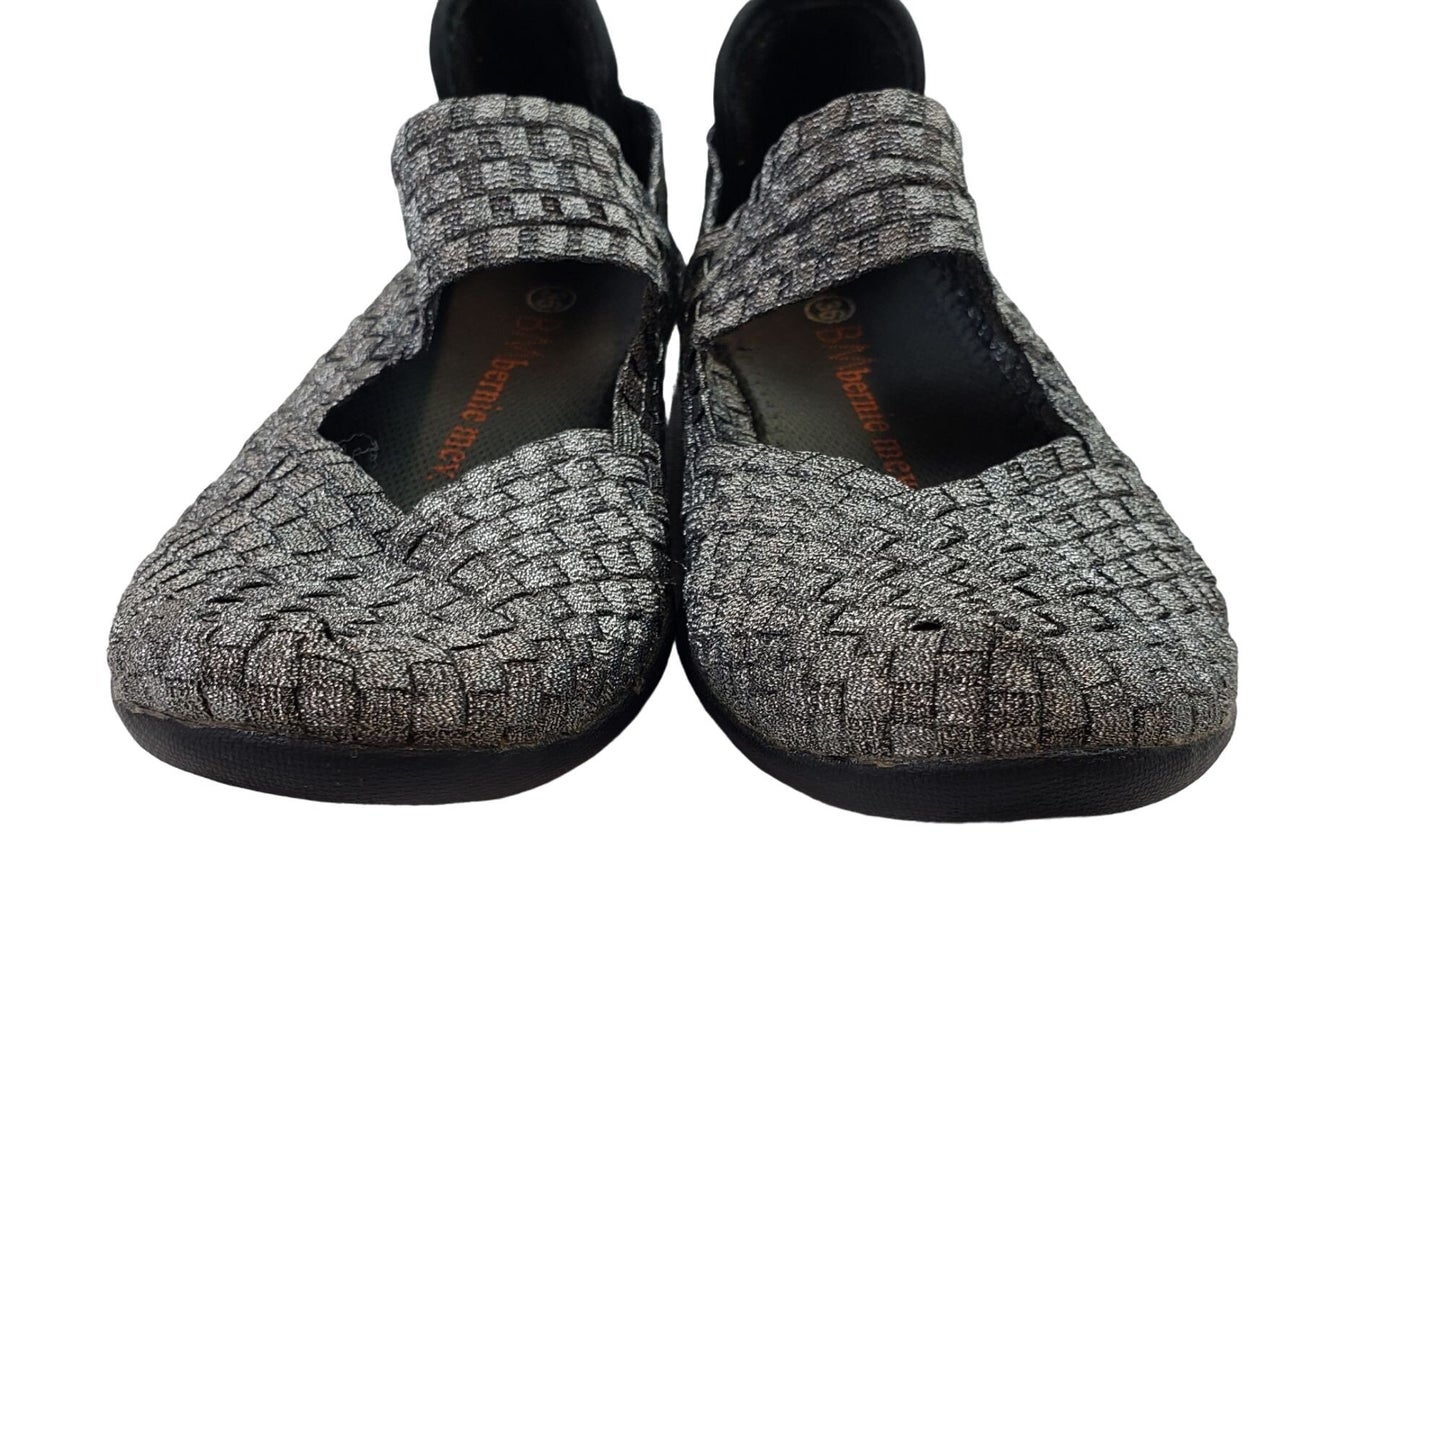 Bernie Mev Cuddly Silver Metallic Woven Shoes Size EU 36/US 5